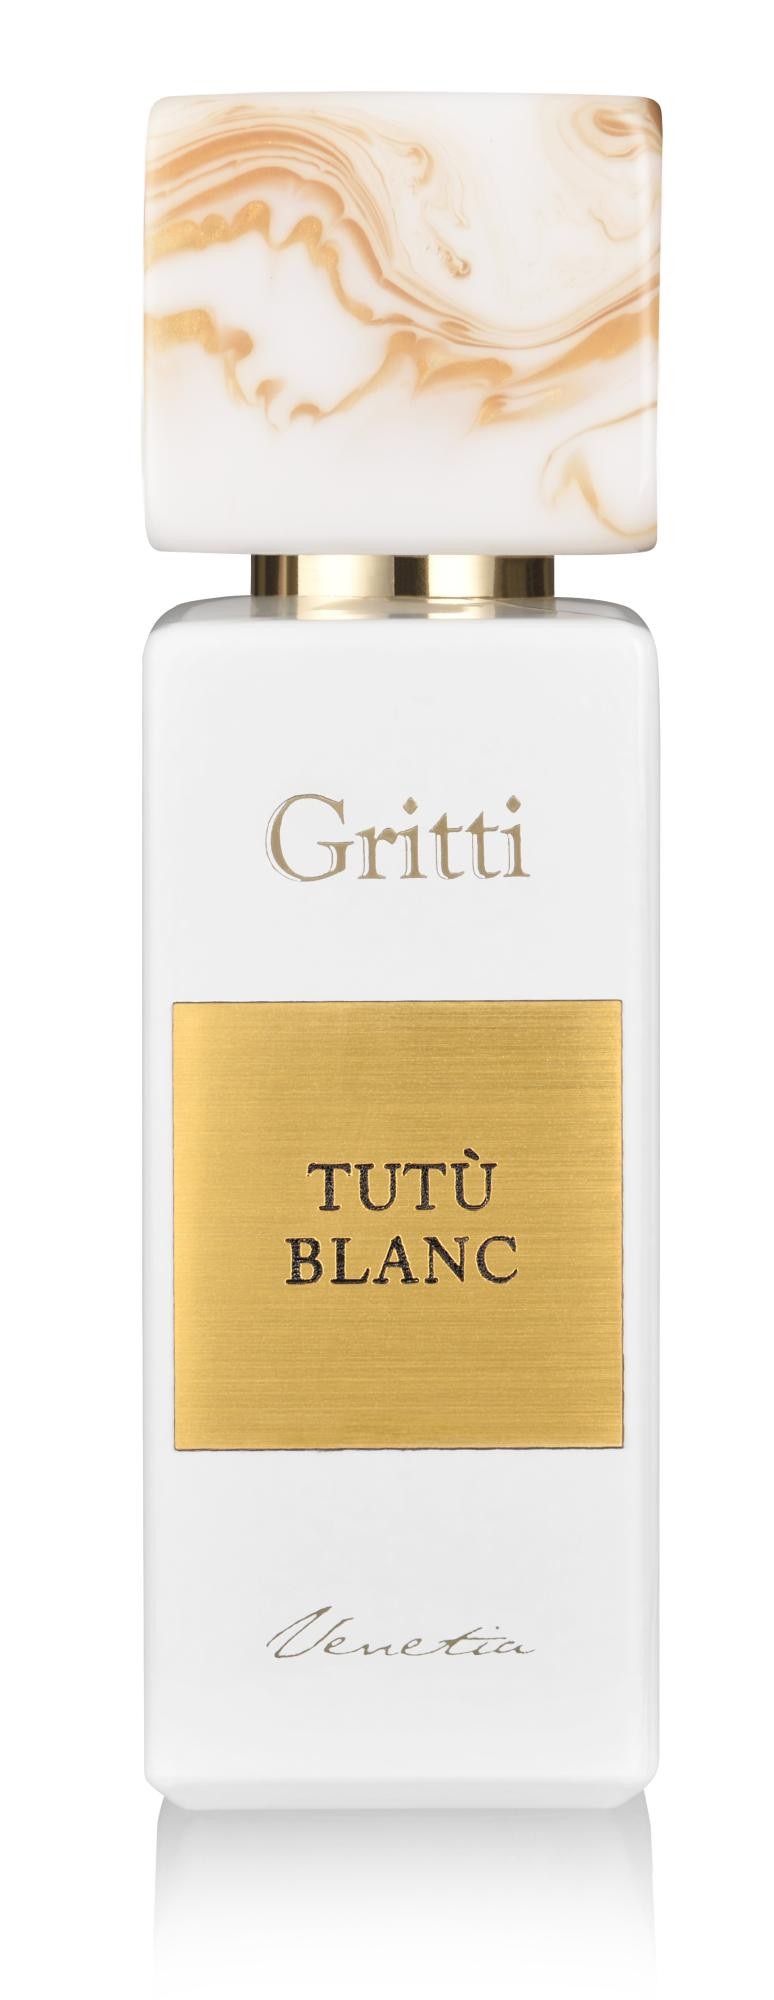 Gritti Venetia Tutù Blanc Eau de Parfum 100ml